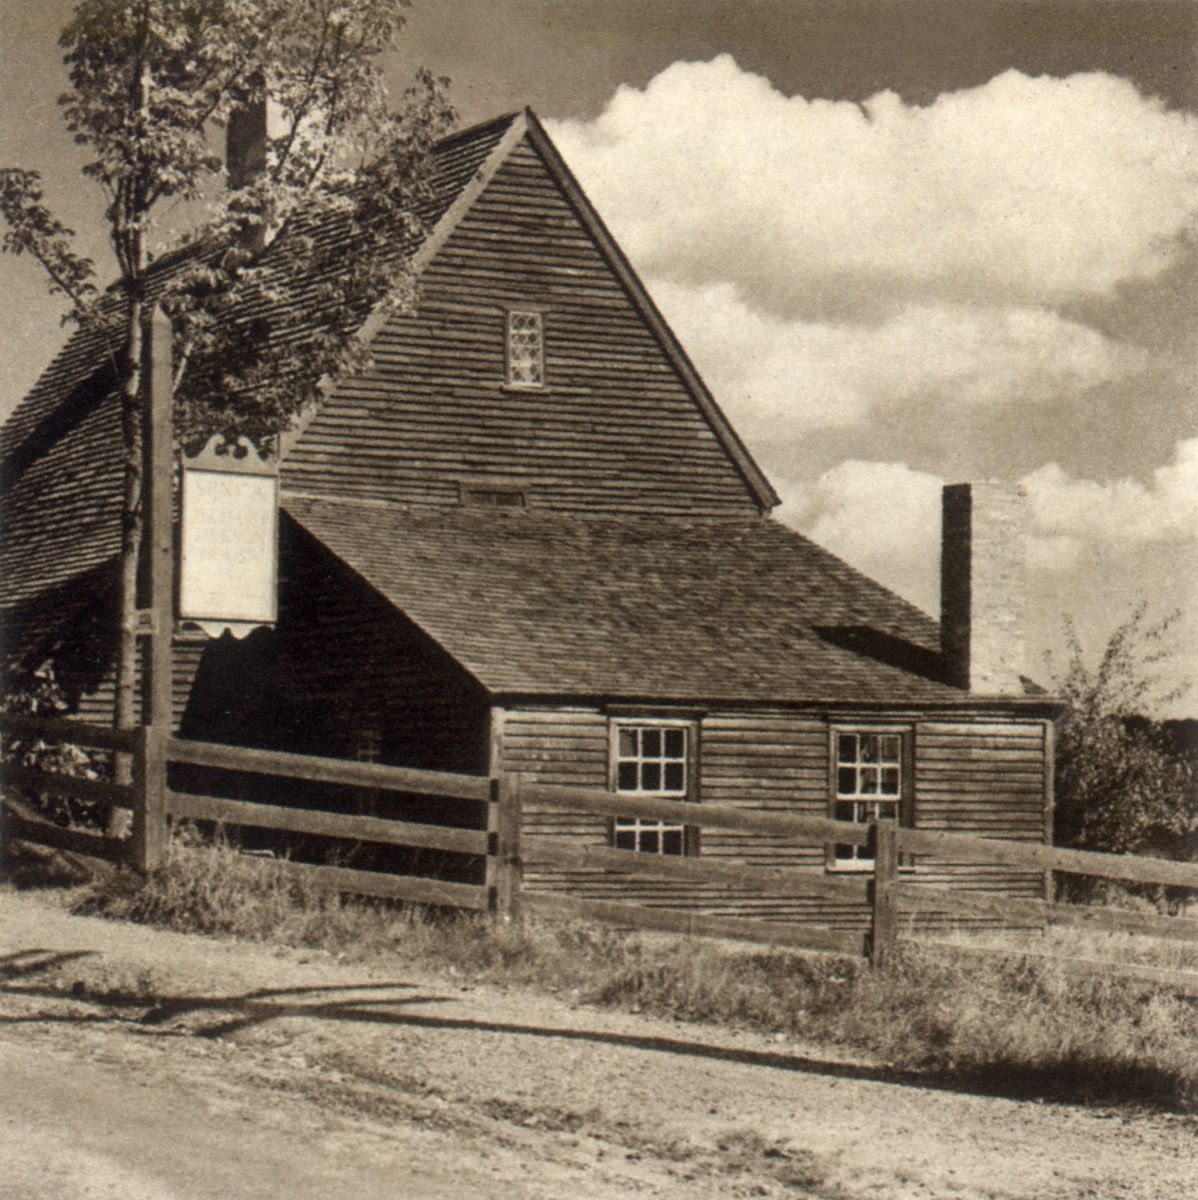 MM0TC0 Richard Jackson House. Portsmutas. 1940 m. Vaizdas nufotografuotas 1940 m. Tiksli data nežinoma.